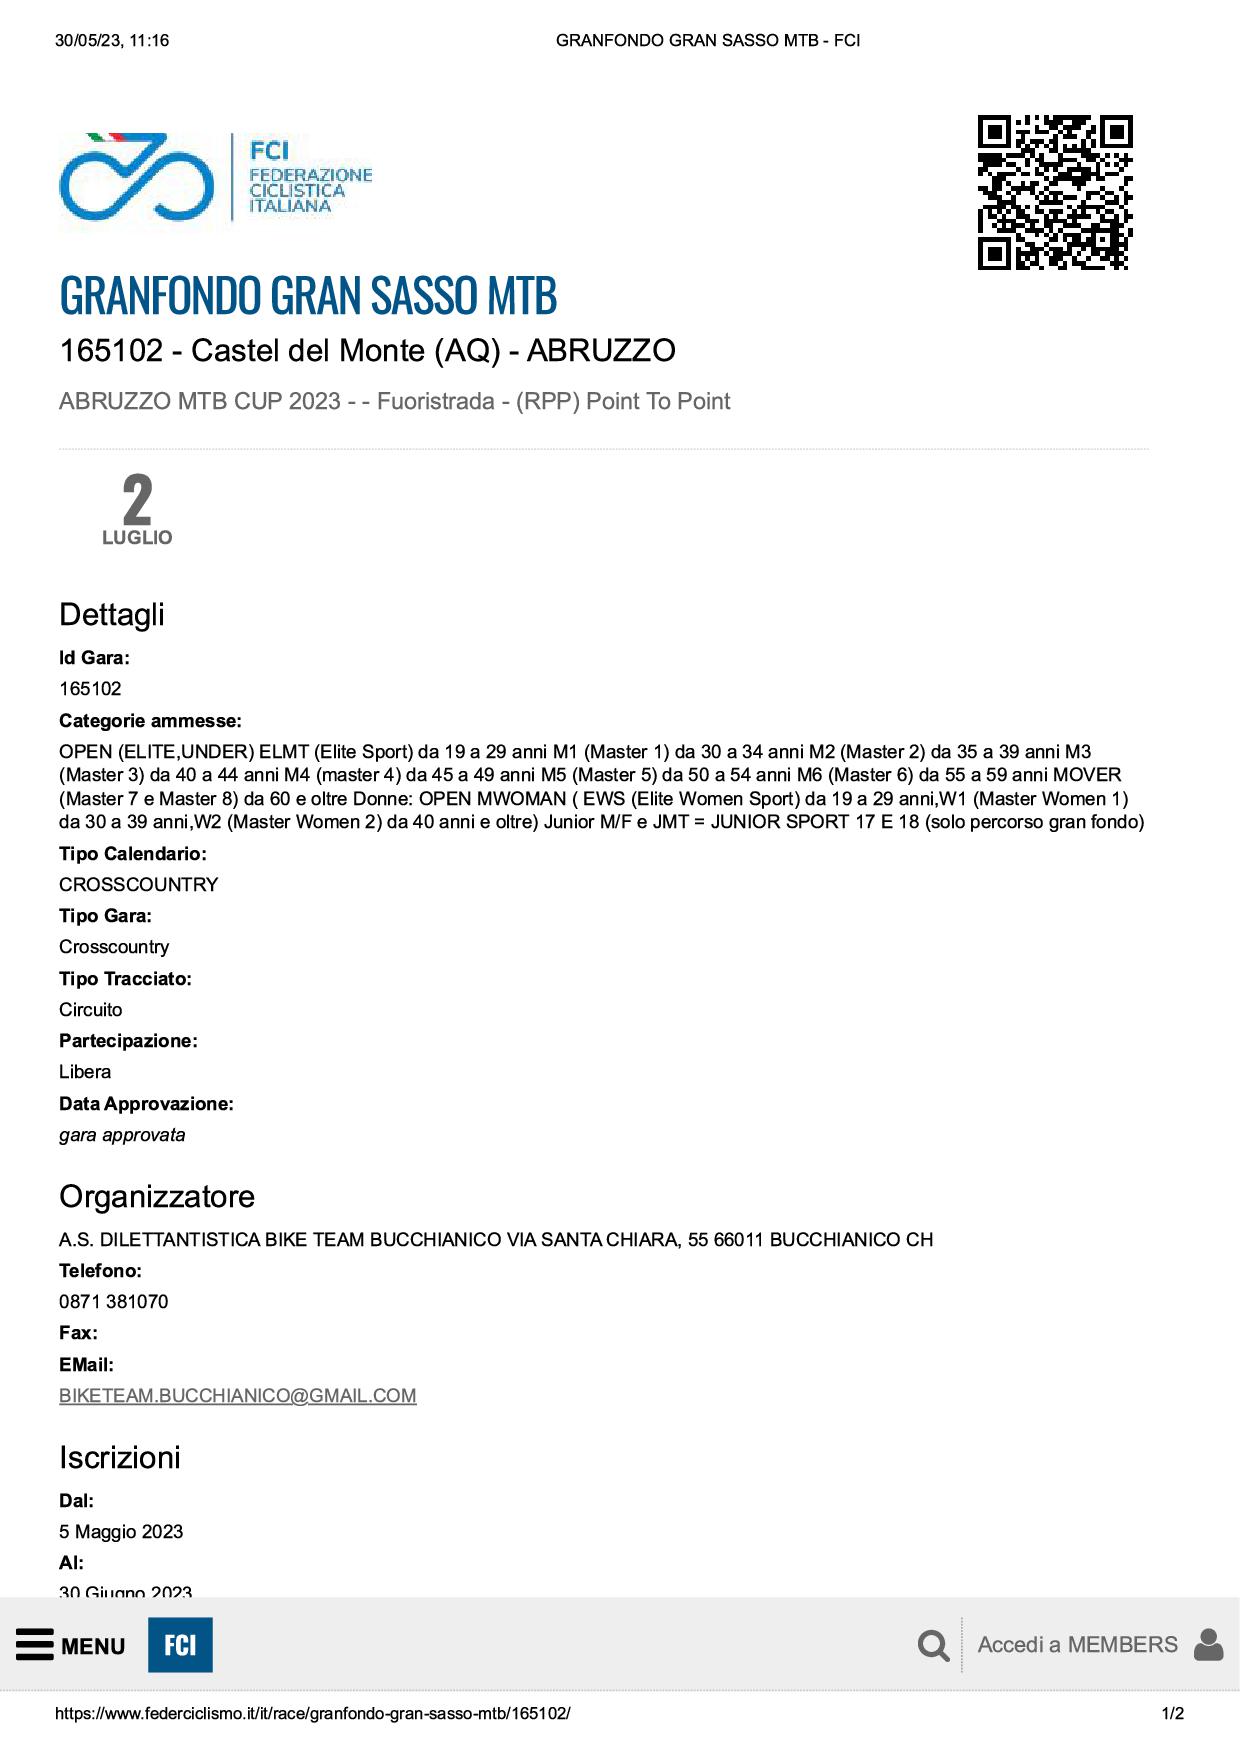 GRANFONDO GRAN SASSO MTB FCI1